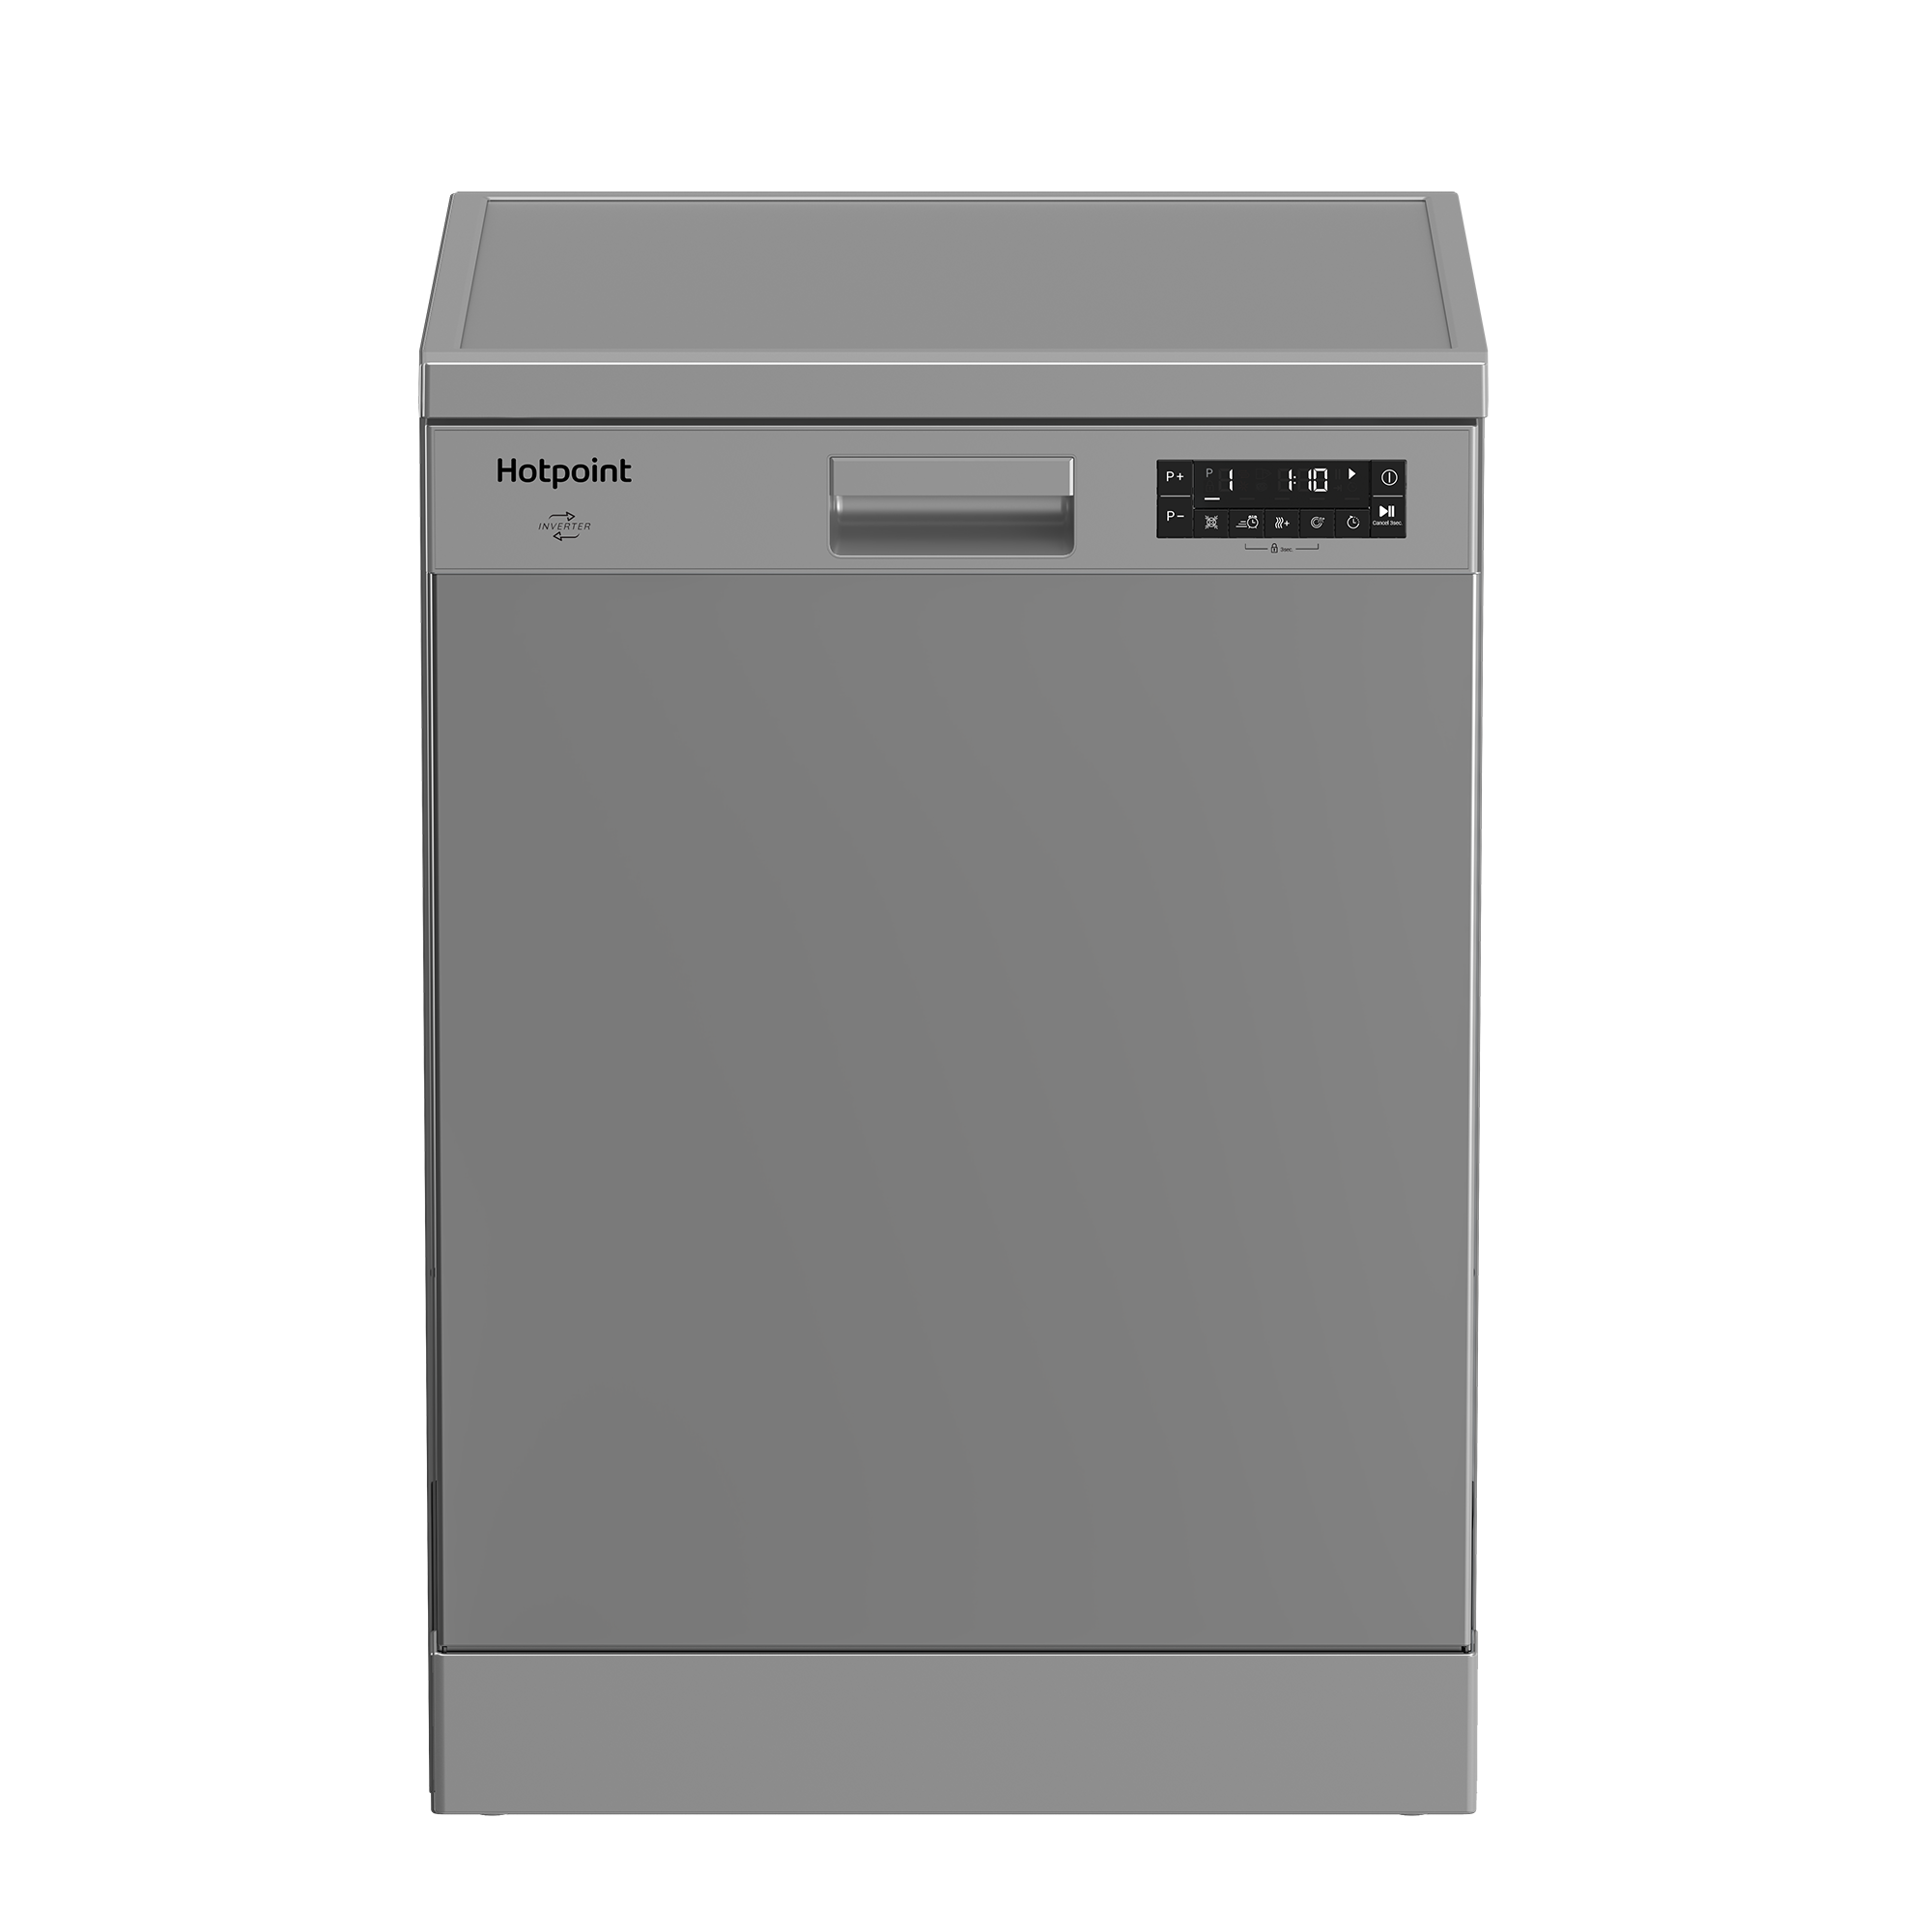 Встраиваемая посудомоечная машина Hotpoint HF 5C84 DW X, 60 см, серебристый